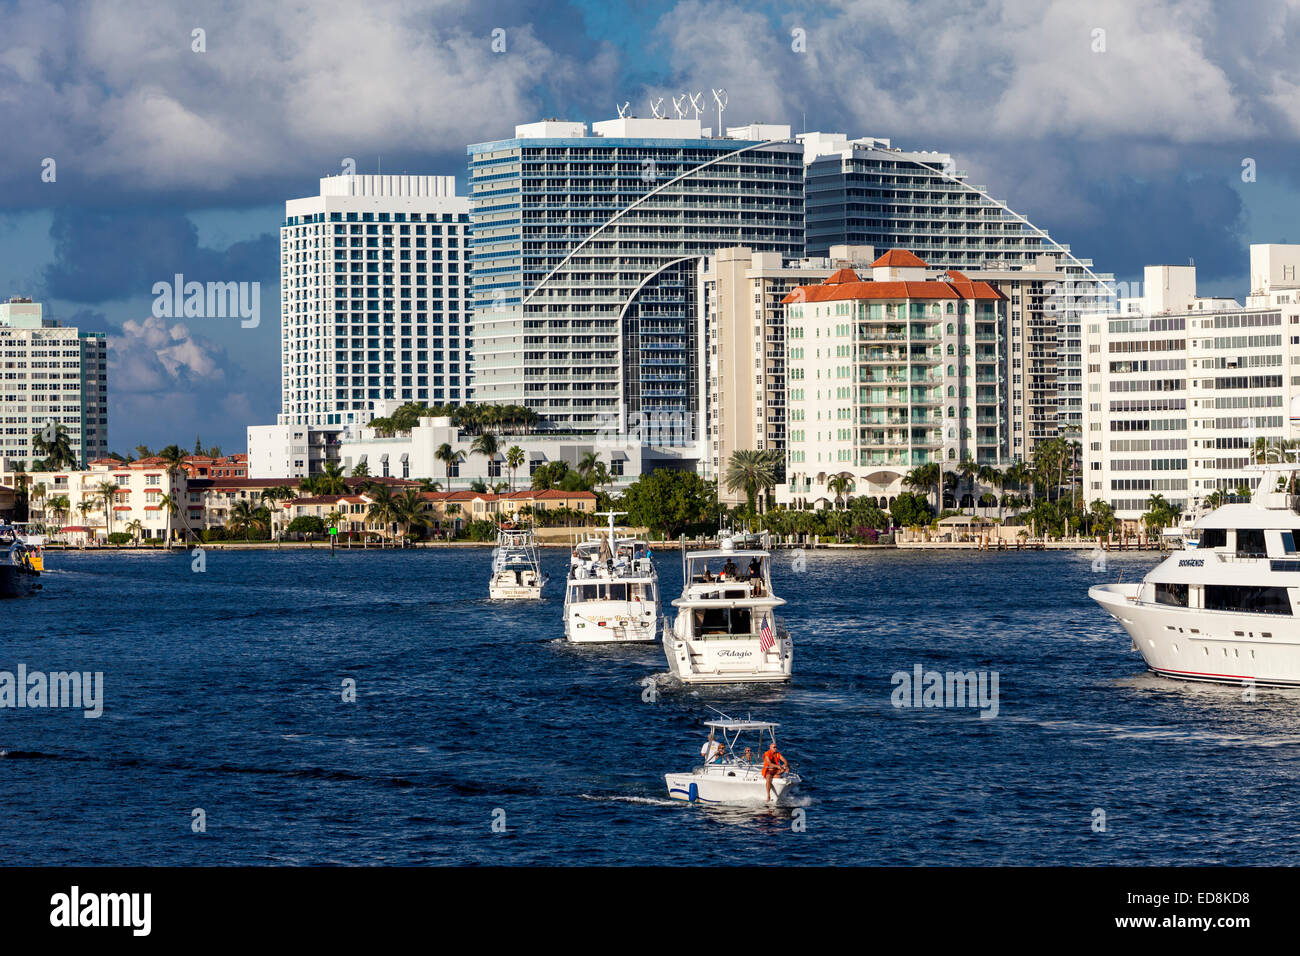 Ft. Lauderdale, en Floride. Dimanche après-midi, les bateaux de plaisance sur l'Intracoastal Waterway. Hôtel W dans le centre. Banque D'Images